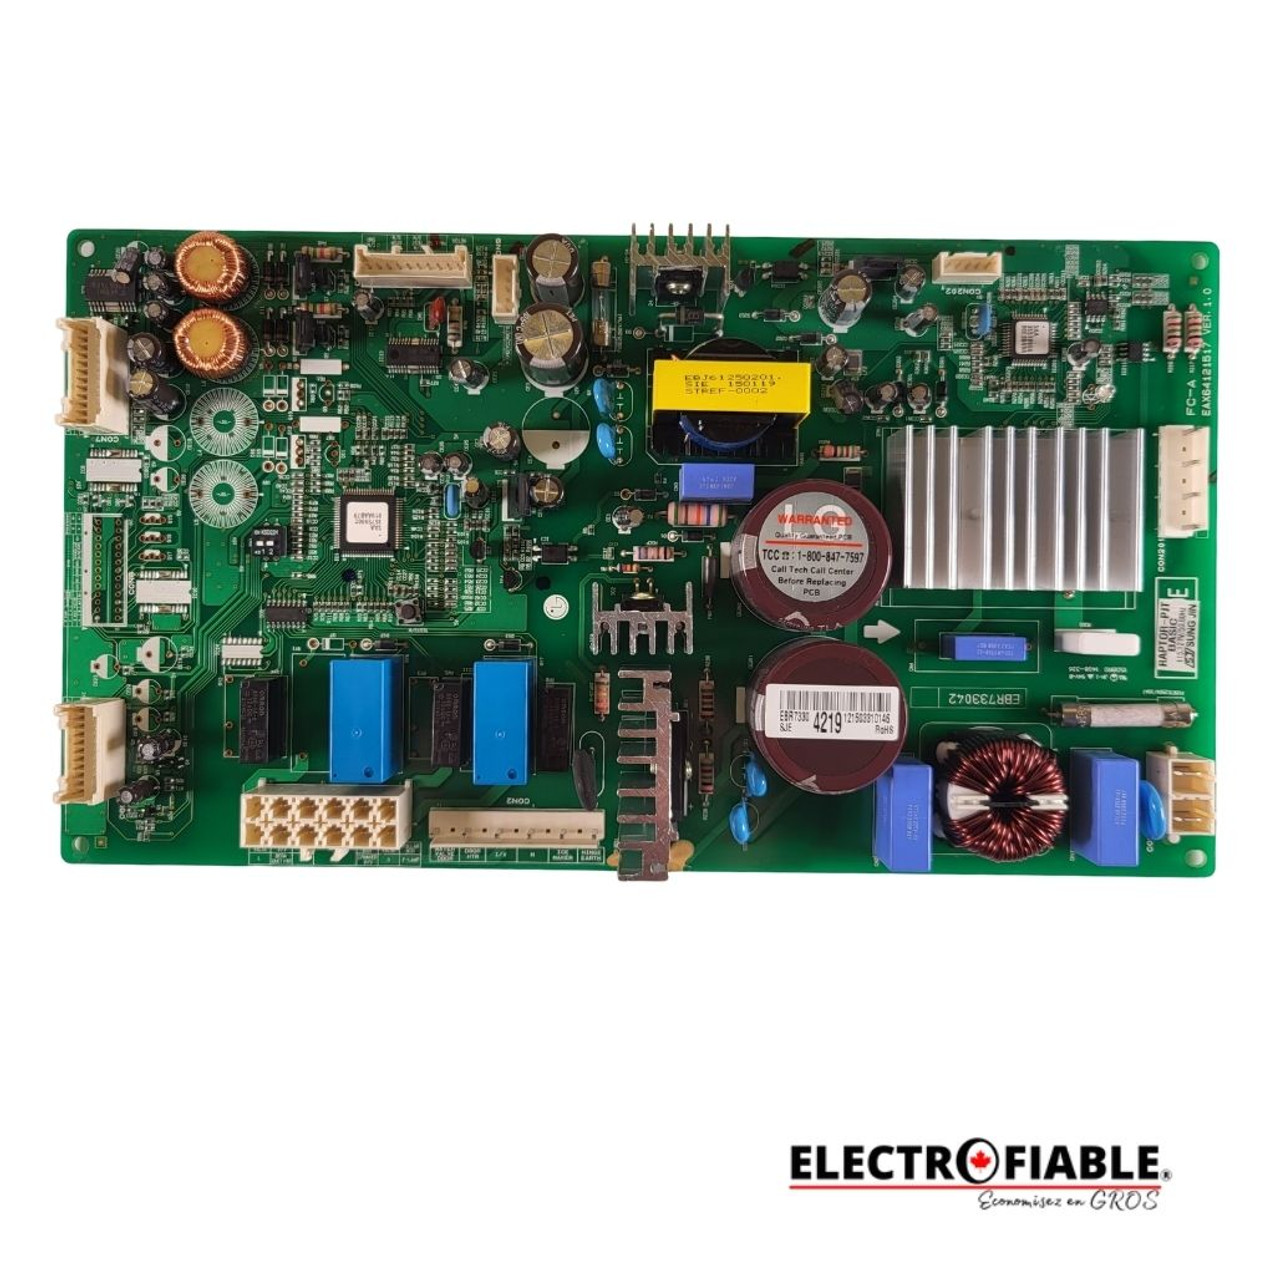 EBR73304219 Control board for LG refrigerator